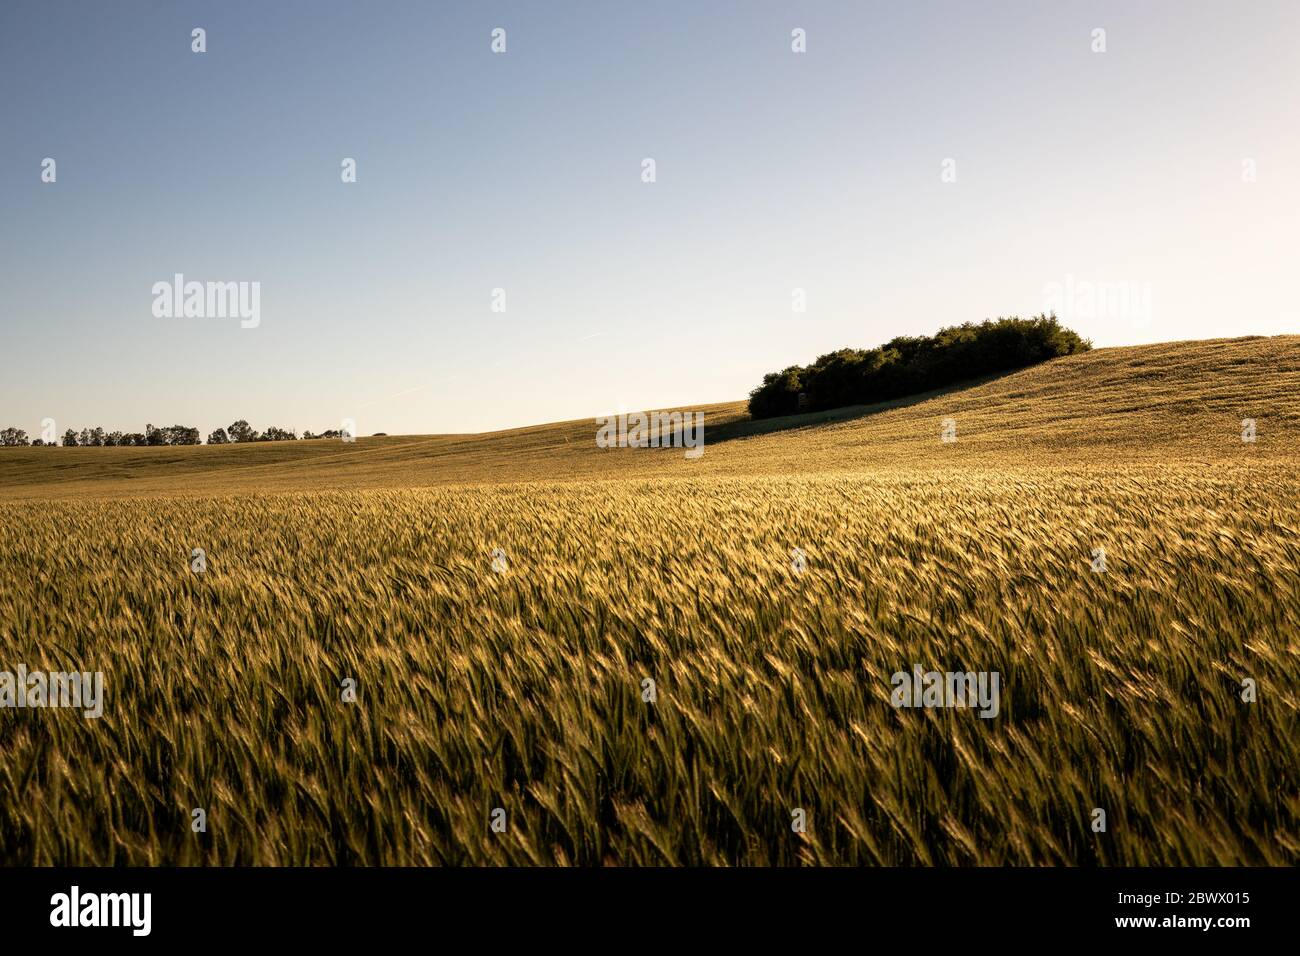 A field near the Feldberger Seenlandschaft Stock Photo